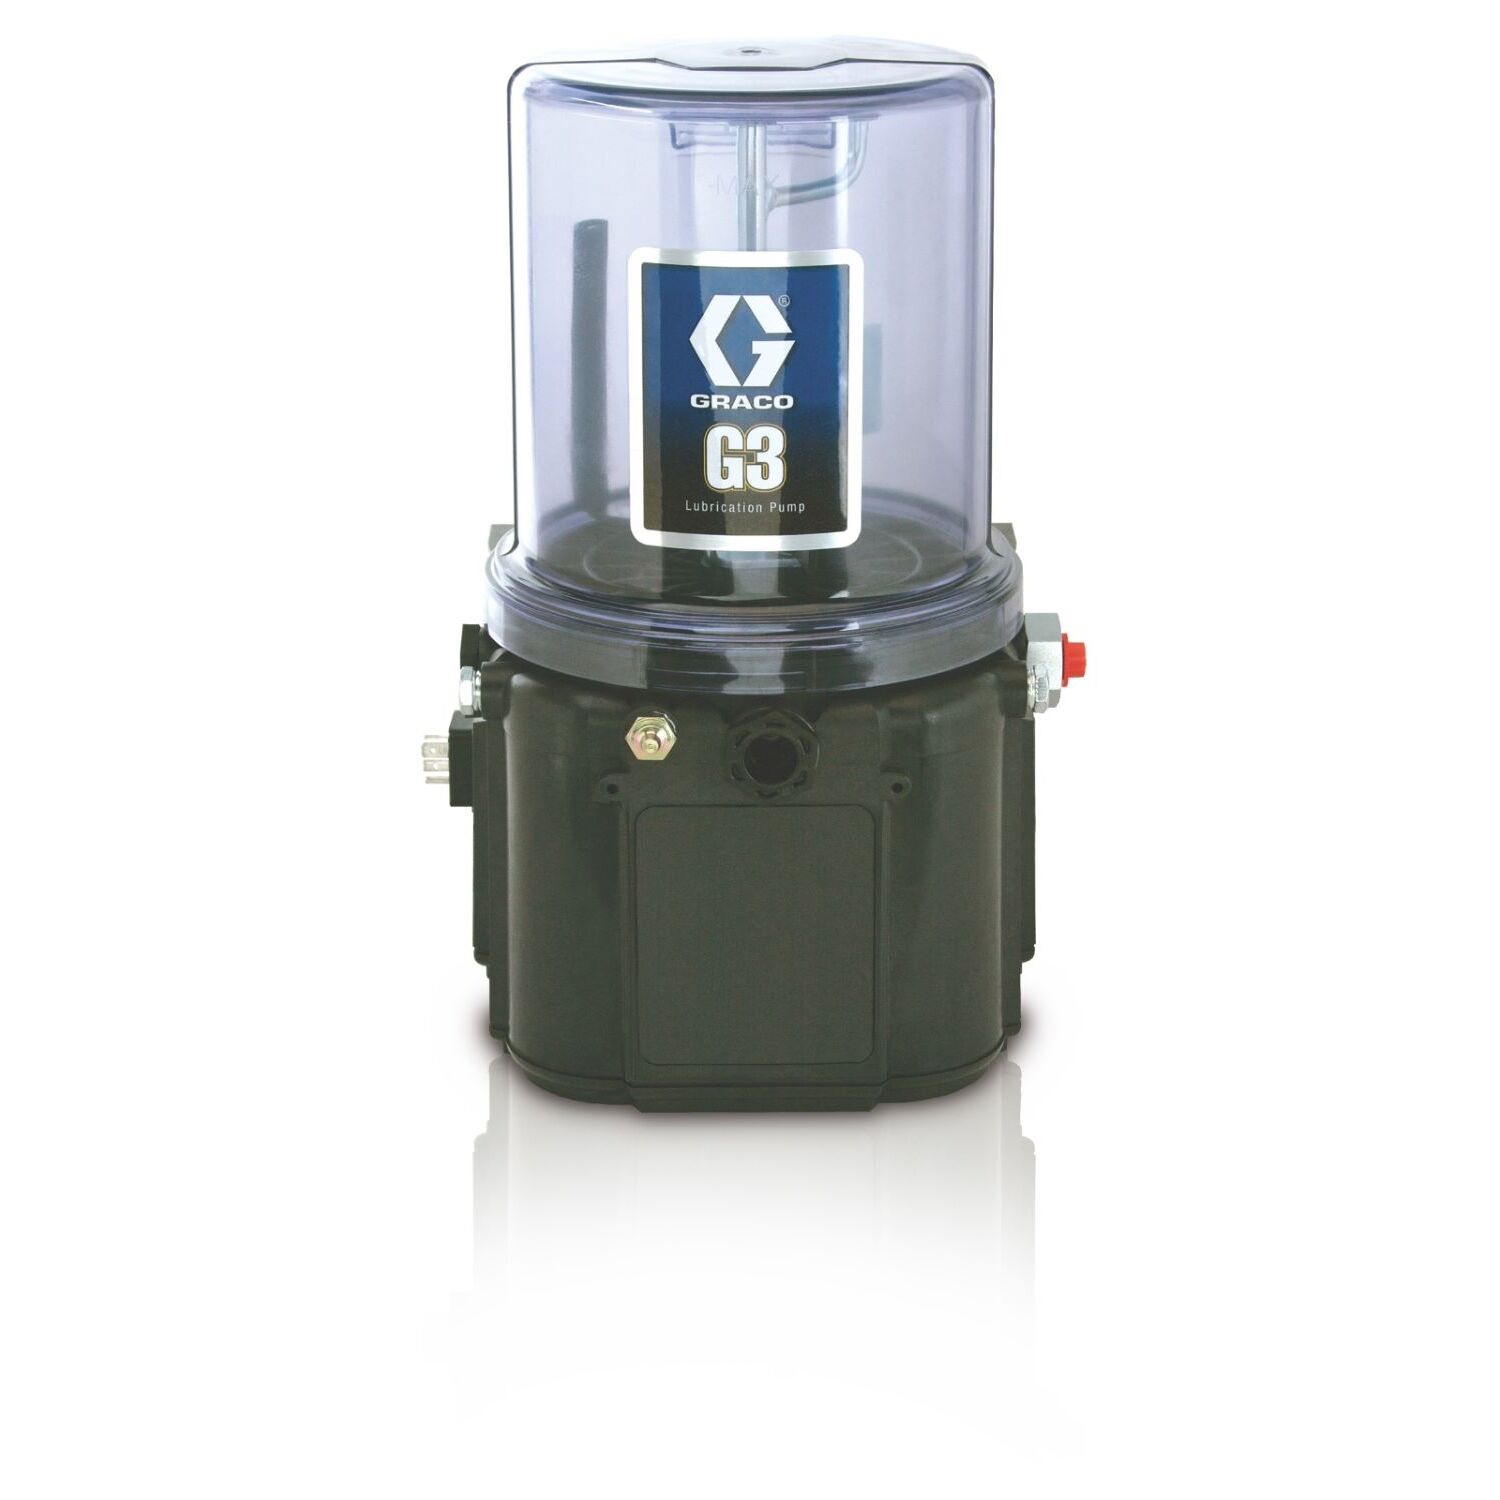 1 Bomba de lubricación con grasa estándar G3™, 24 VCC, 2 litros, placa de arrastre, nivel bajo externo, CPC